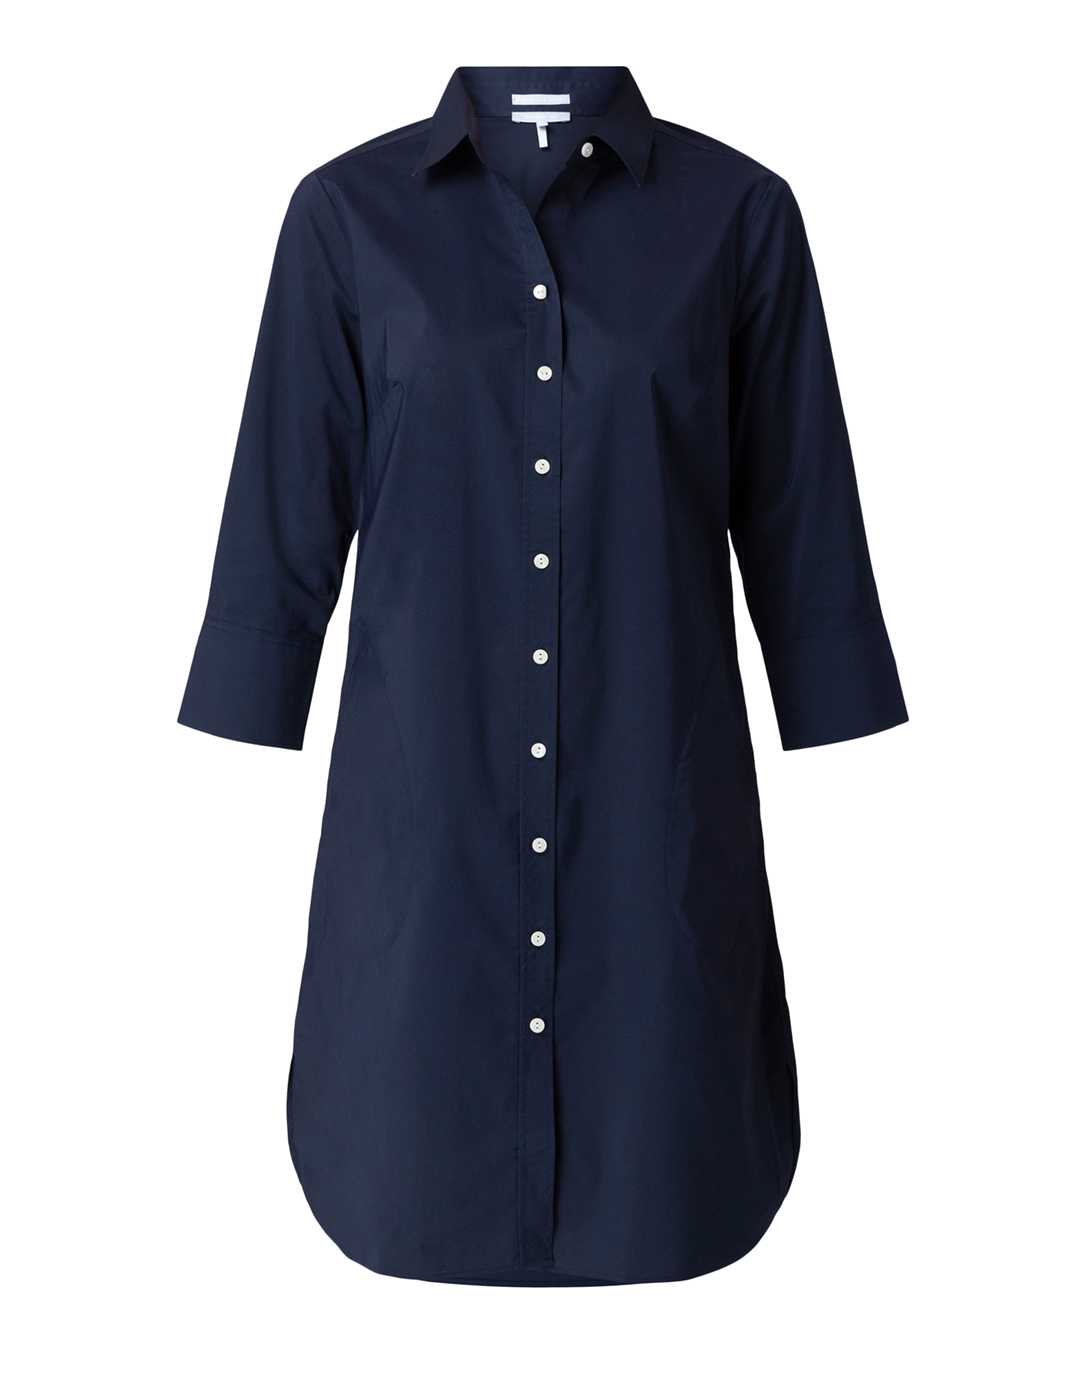 navy cotton shirt dress